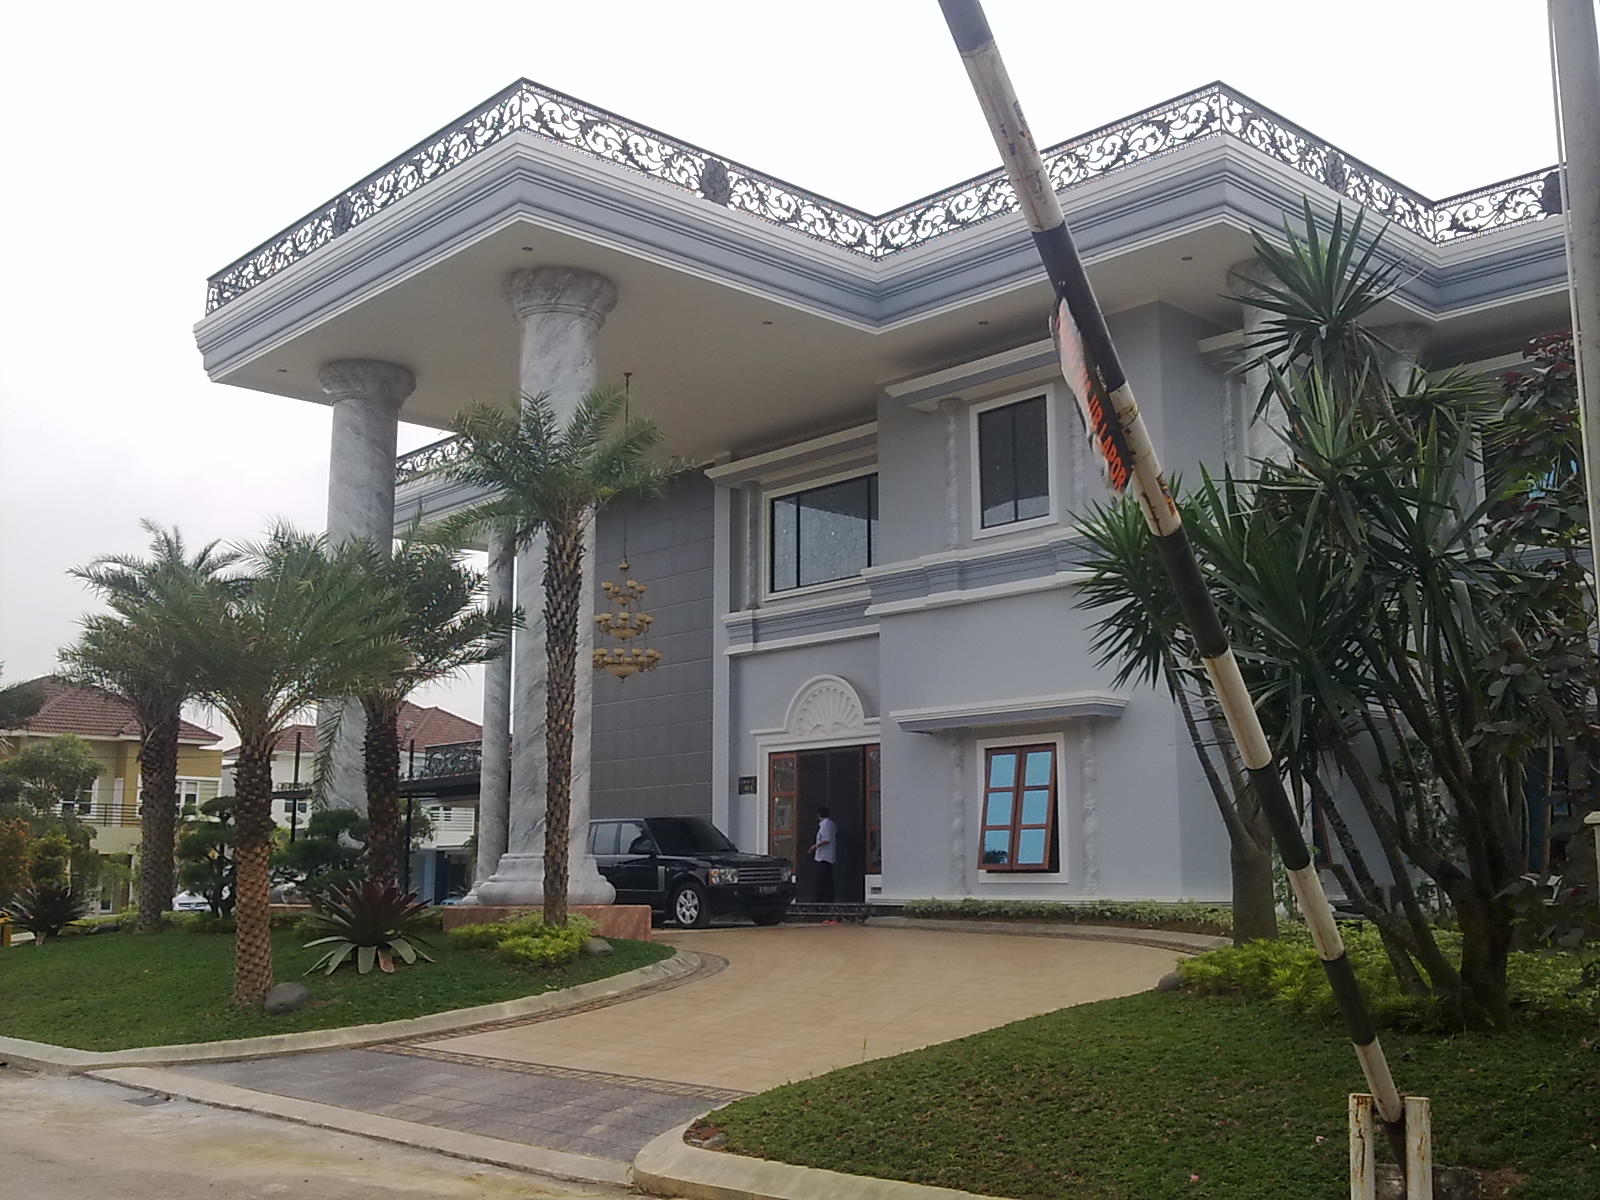 Fantastis Desain Rumah Mewah Indonesia 92 Ide Renovasi Rumah oleh Desain Rumah Mewah Indonesia